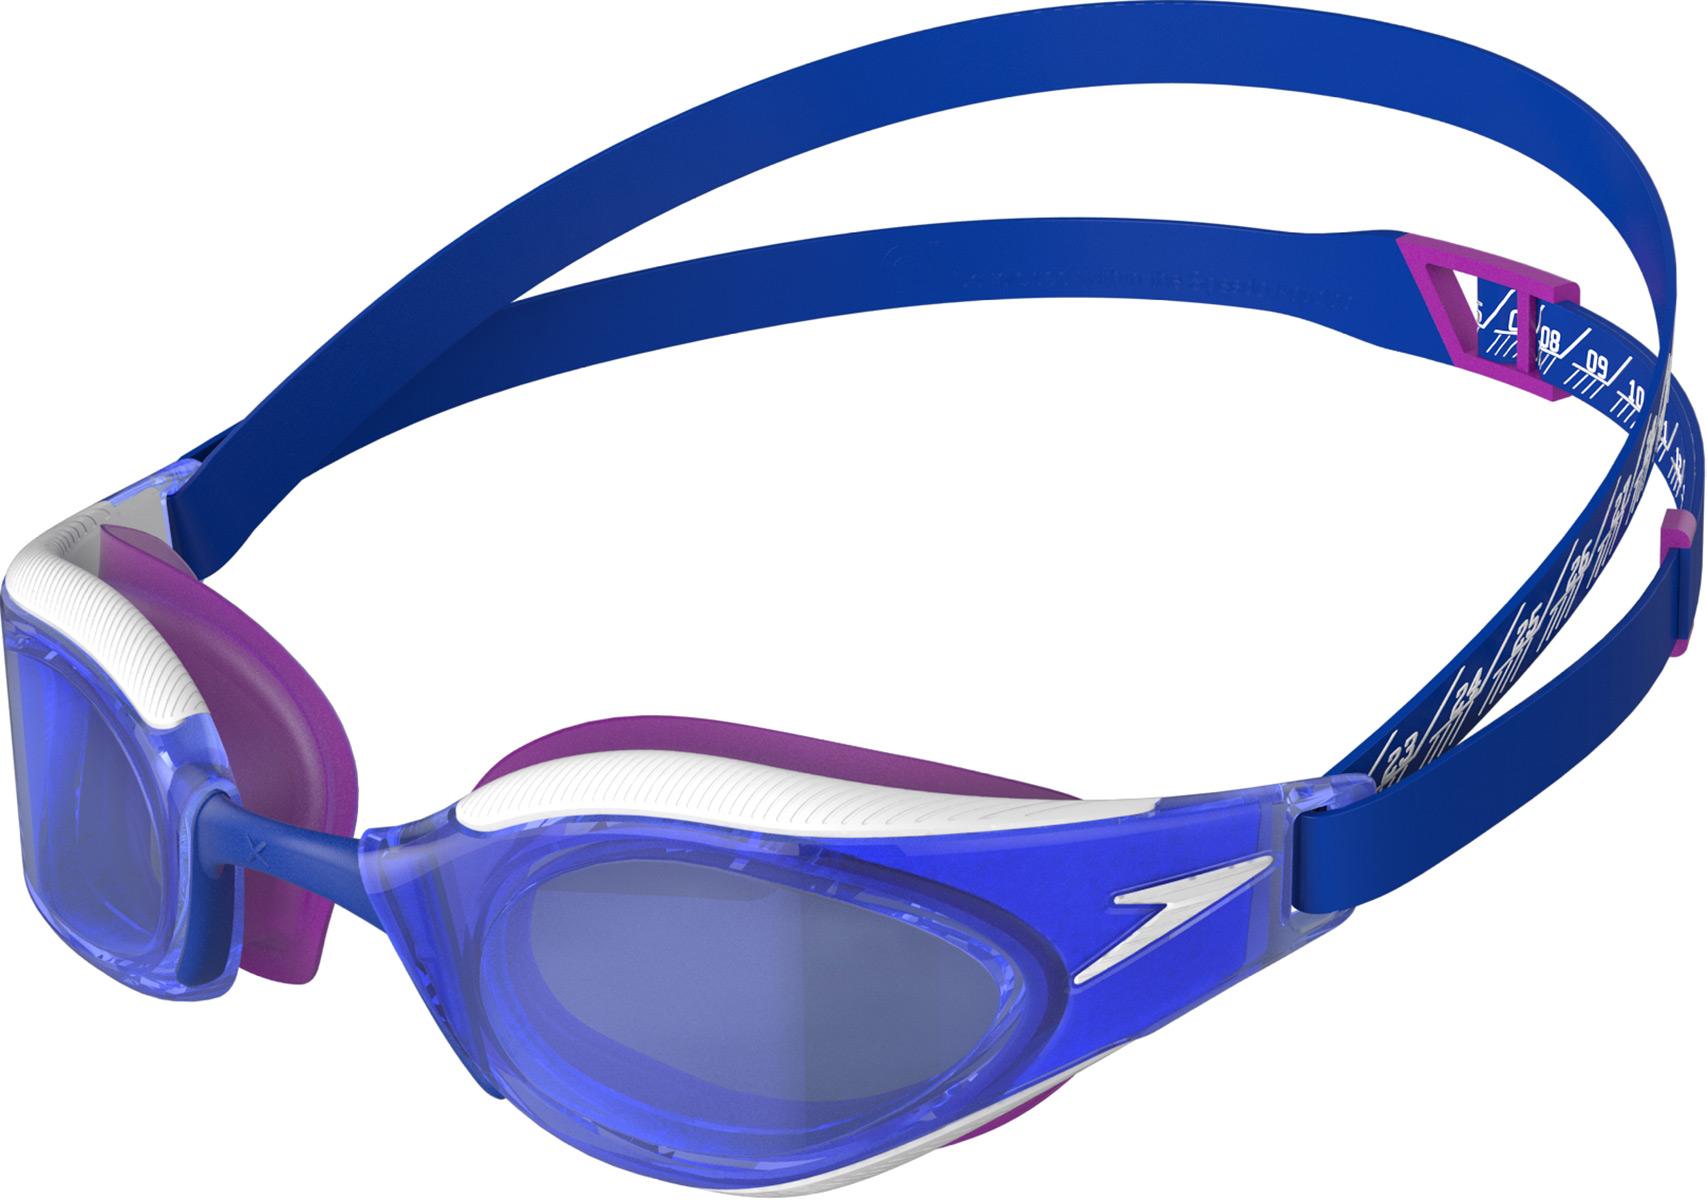 Speedo Fastskin Hyper Elite Goggles - Blue Flame/diva/white